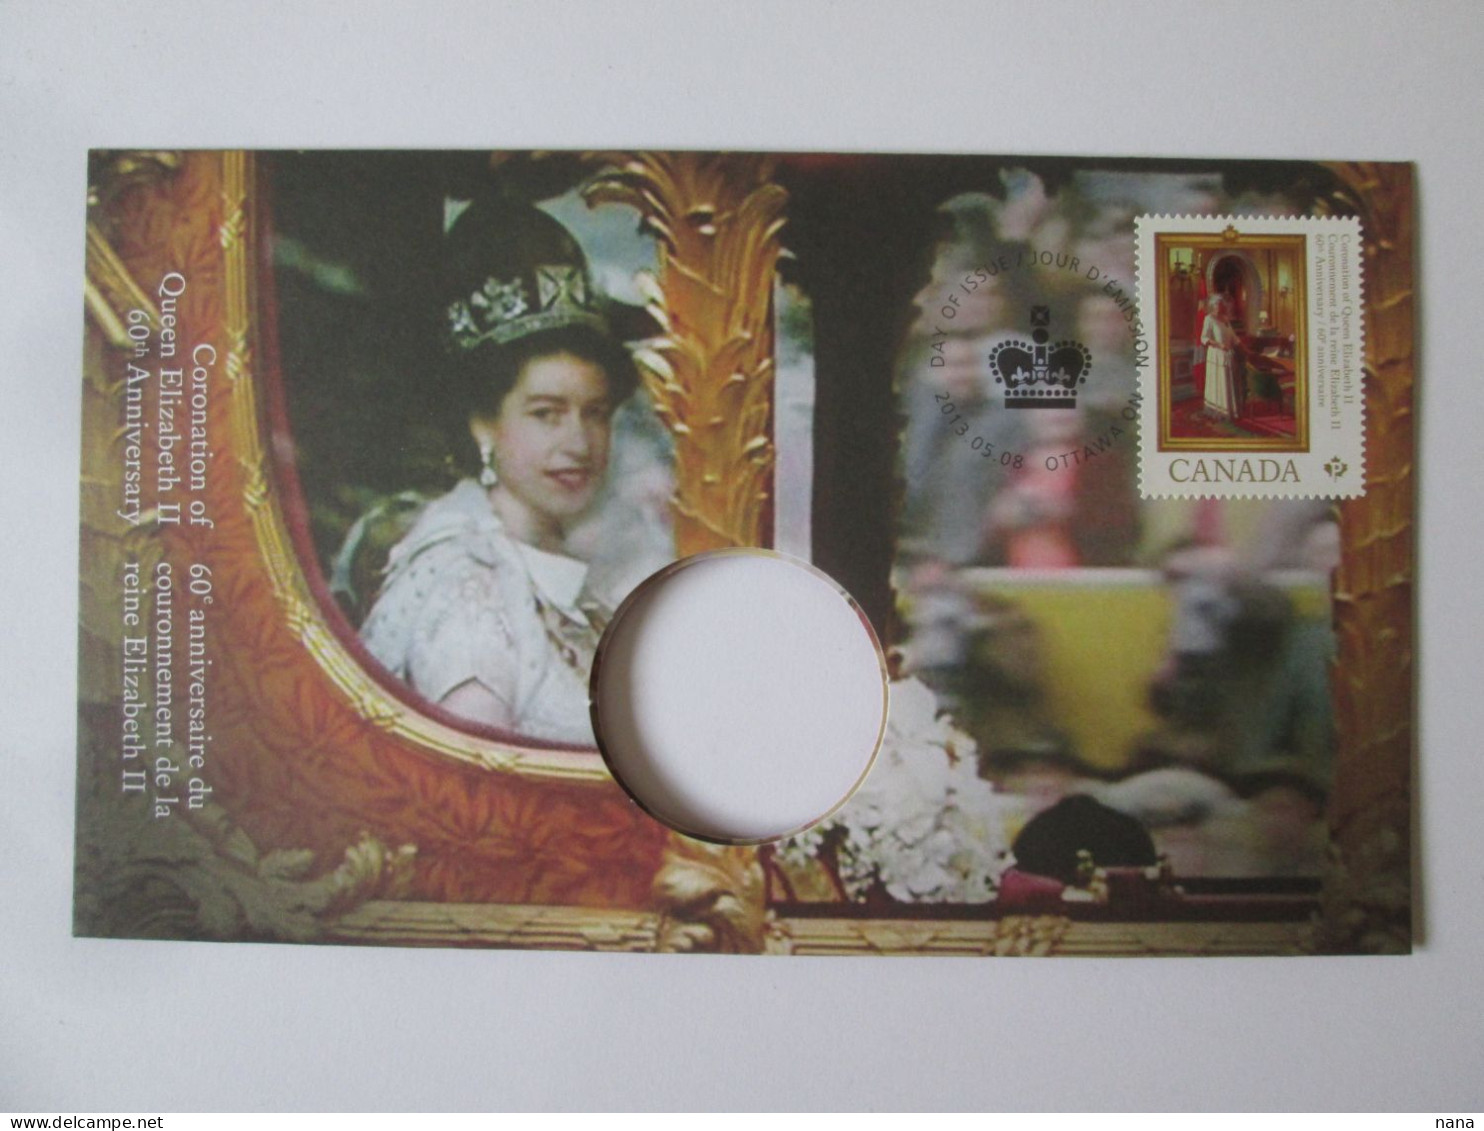 Canada Envel.philatelique Sans Monnaie,reine Elizabeth II,60e Anniv.tirage Limite A 10000/Philat.cover Without Coin2013 - Brieven En Documenten